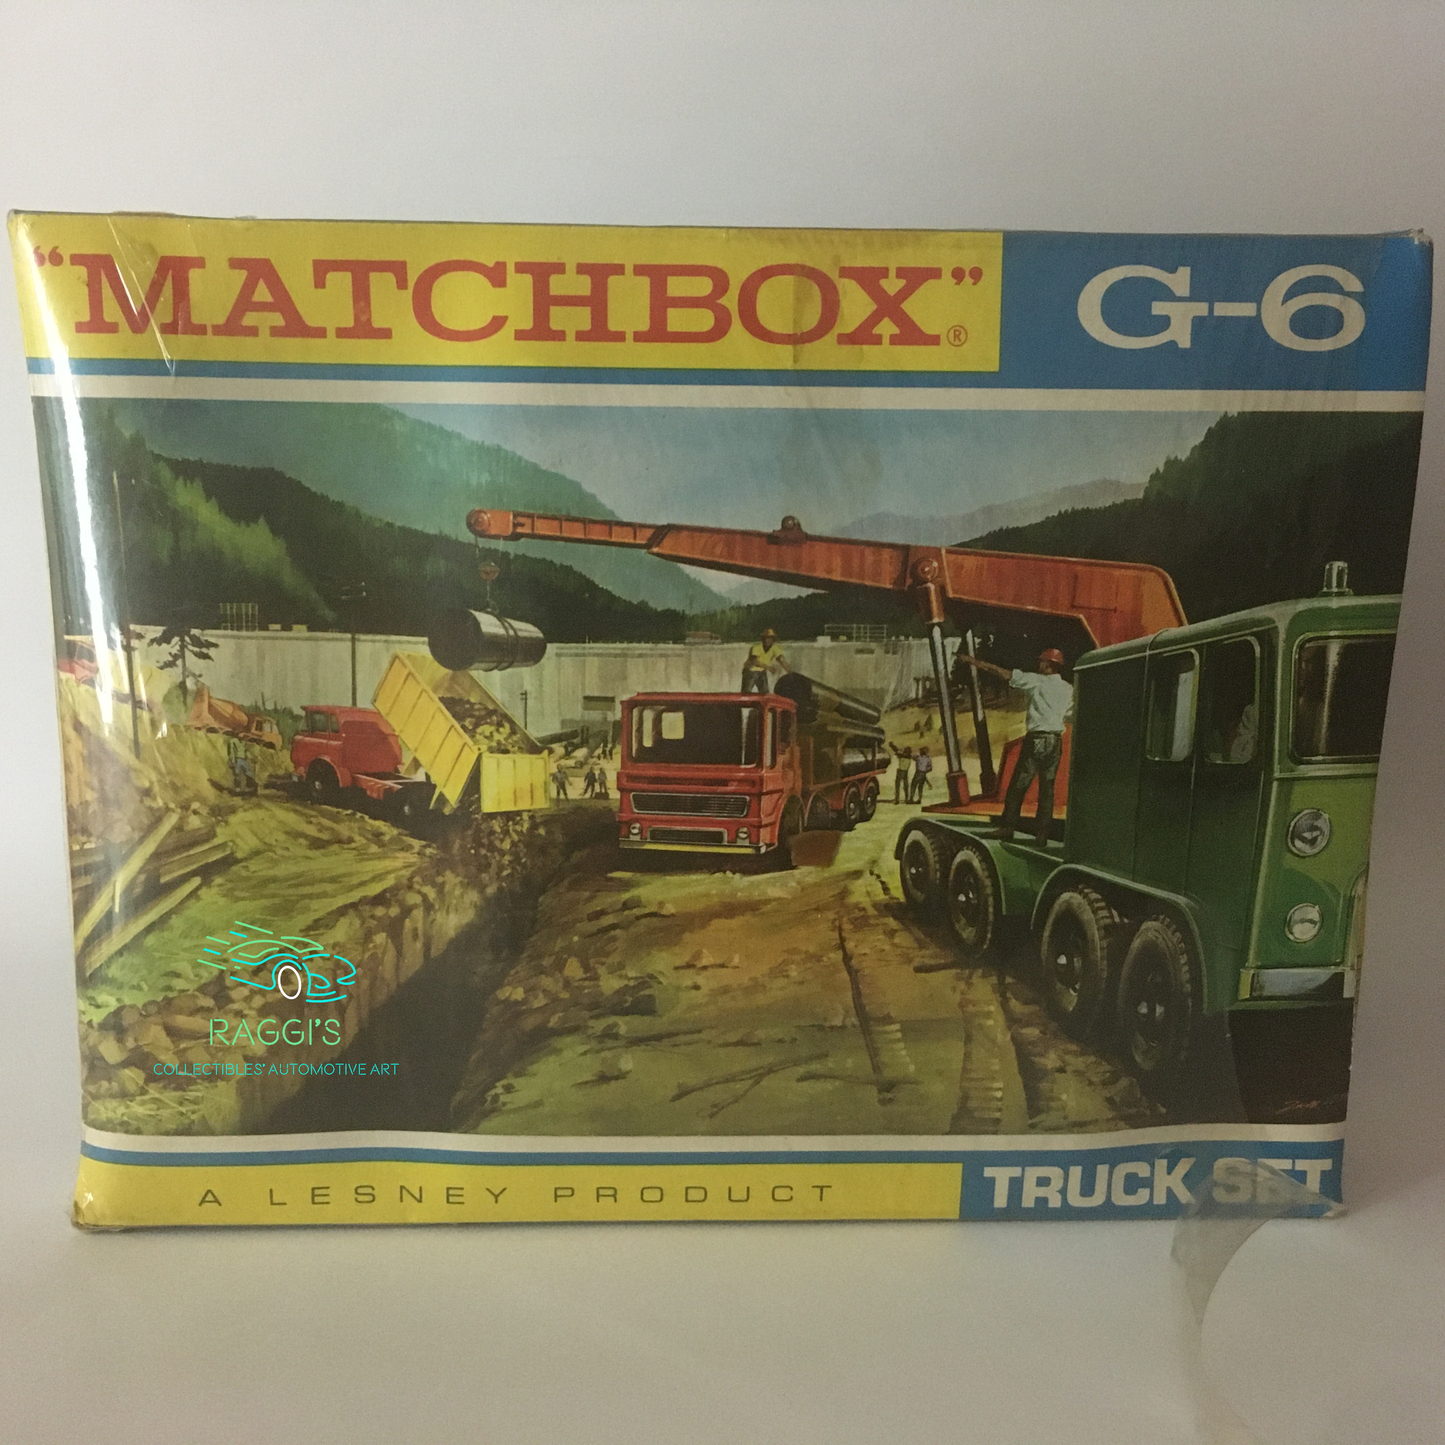 Matchbox, Gift Set Regular Wheels No. G 6 Truck Set